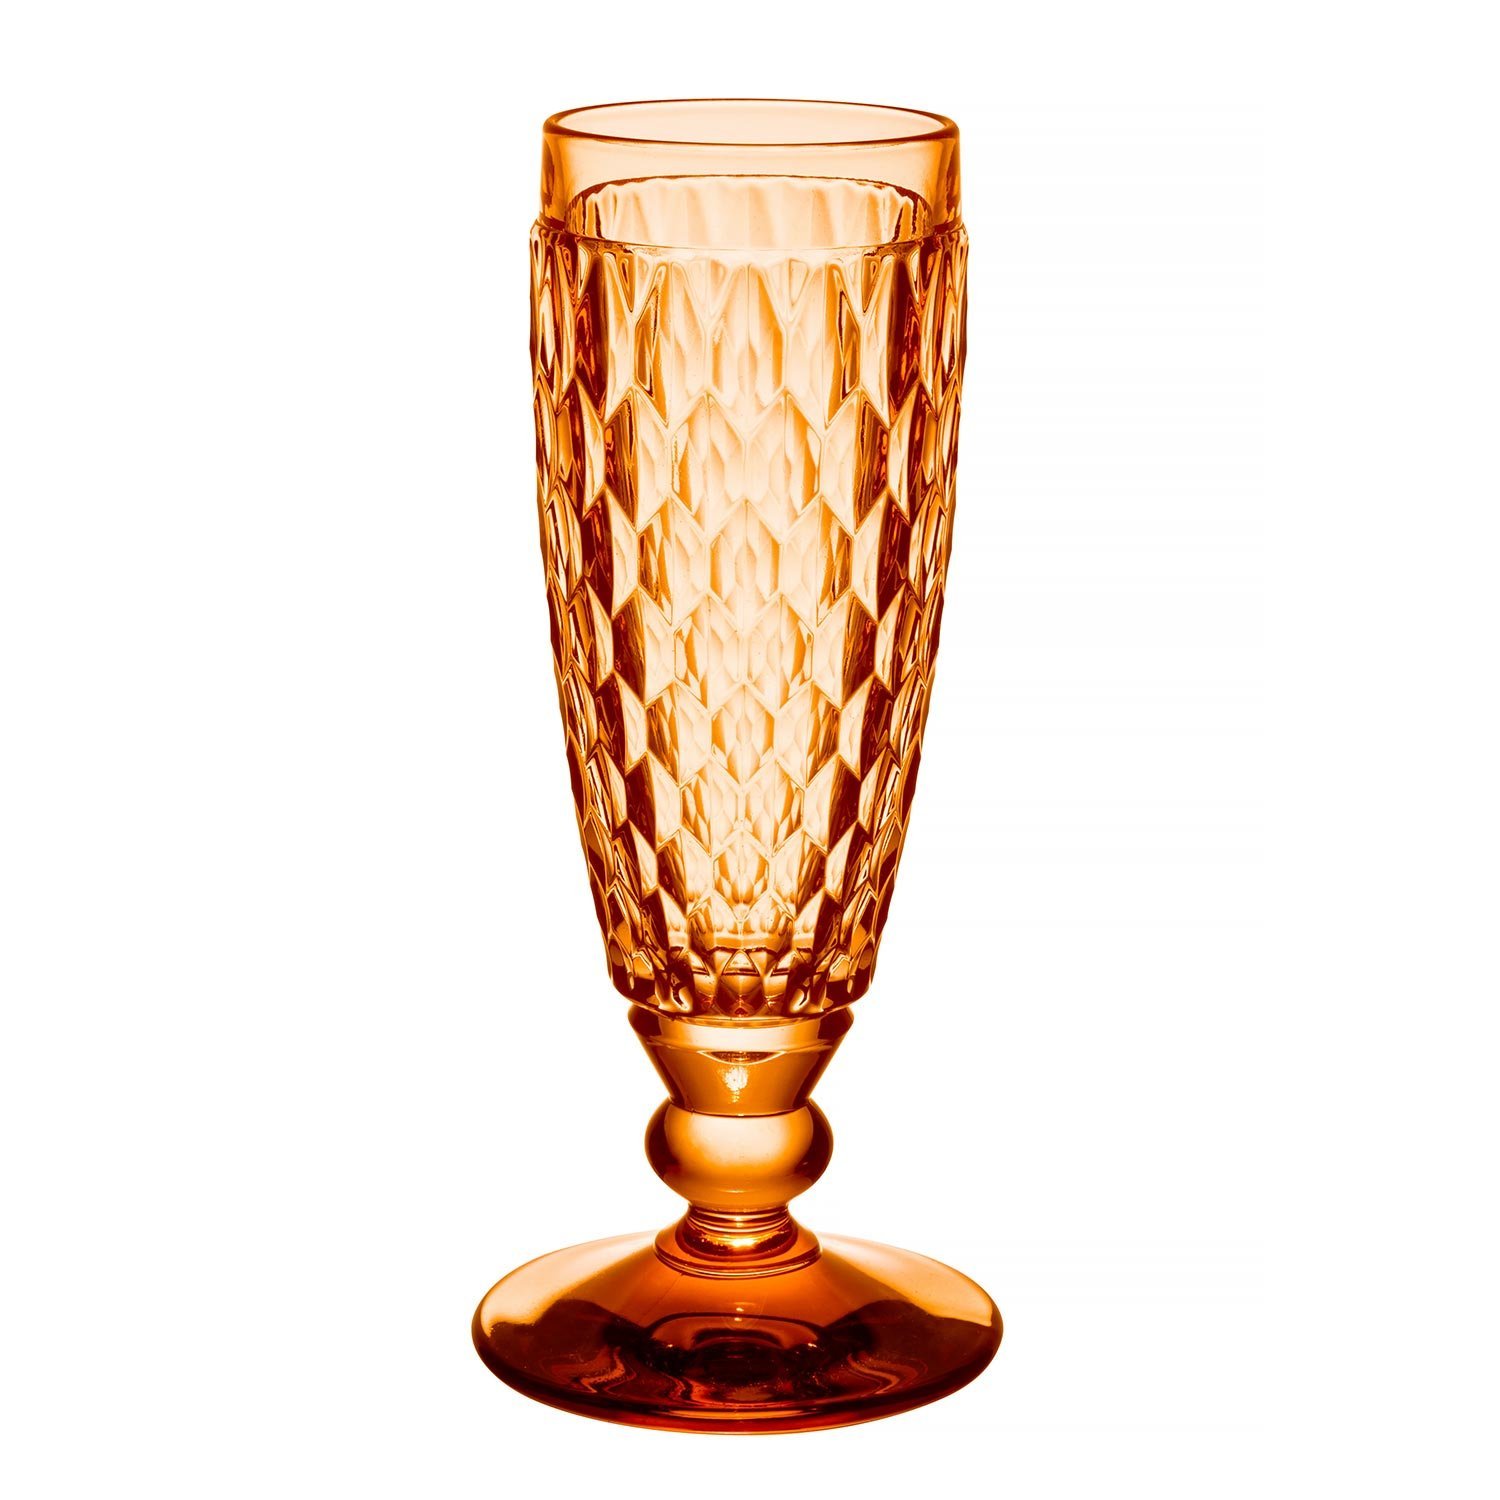 Boston Apricot Бокал для шампанского 163 мм, объем 150 мл Villeroy & Boch
https://spb.v-b.ru
г.Санкт-Петербург
eshop@v-b.spb.ru
+7(812)3801977